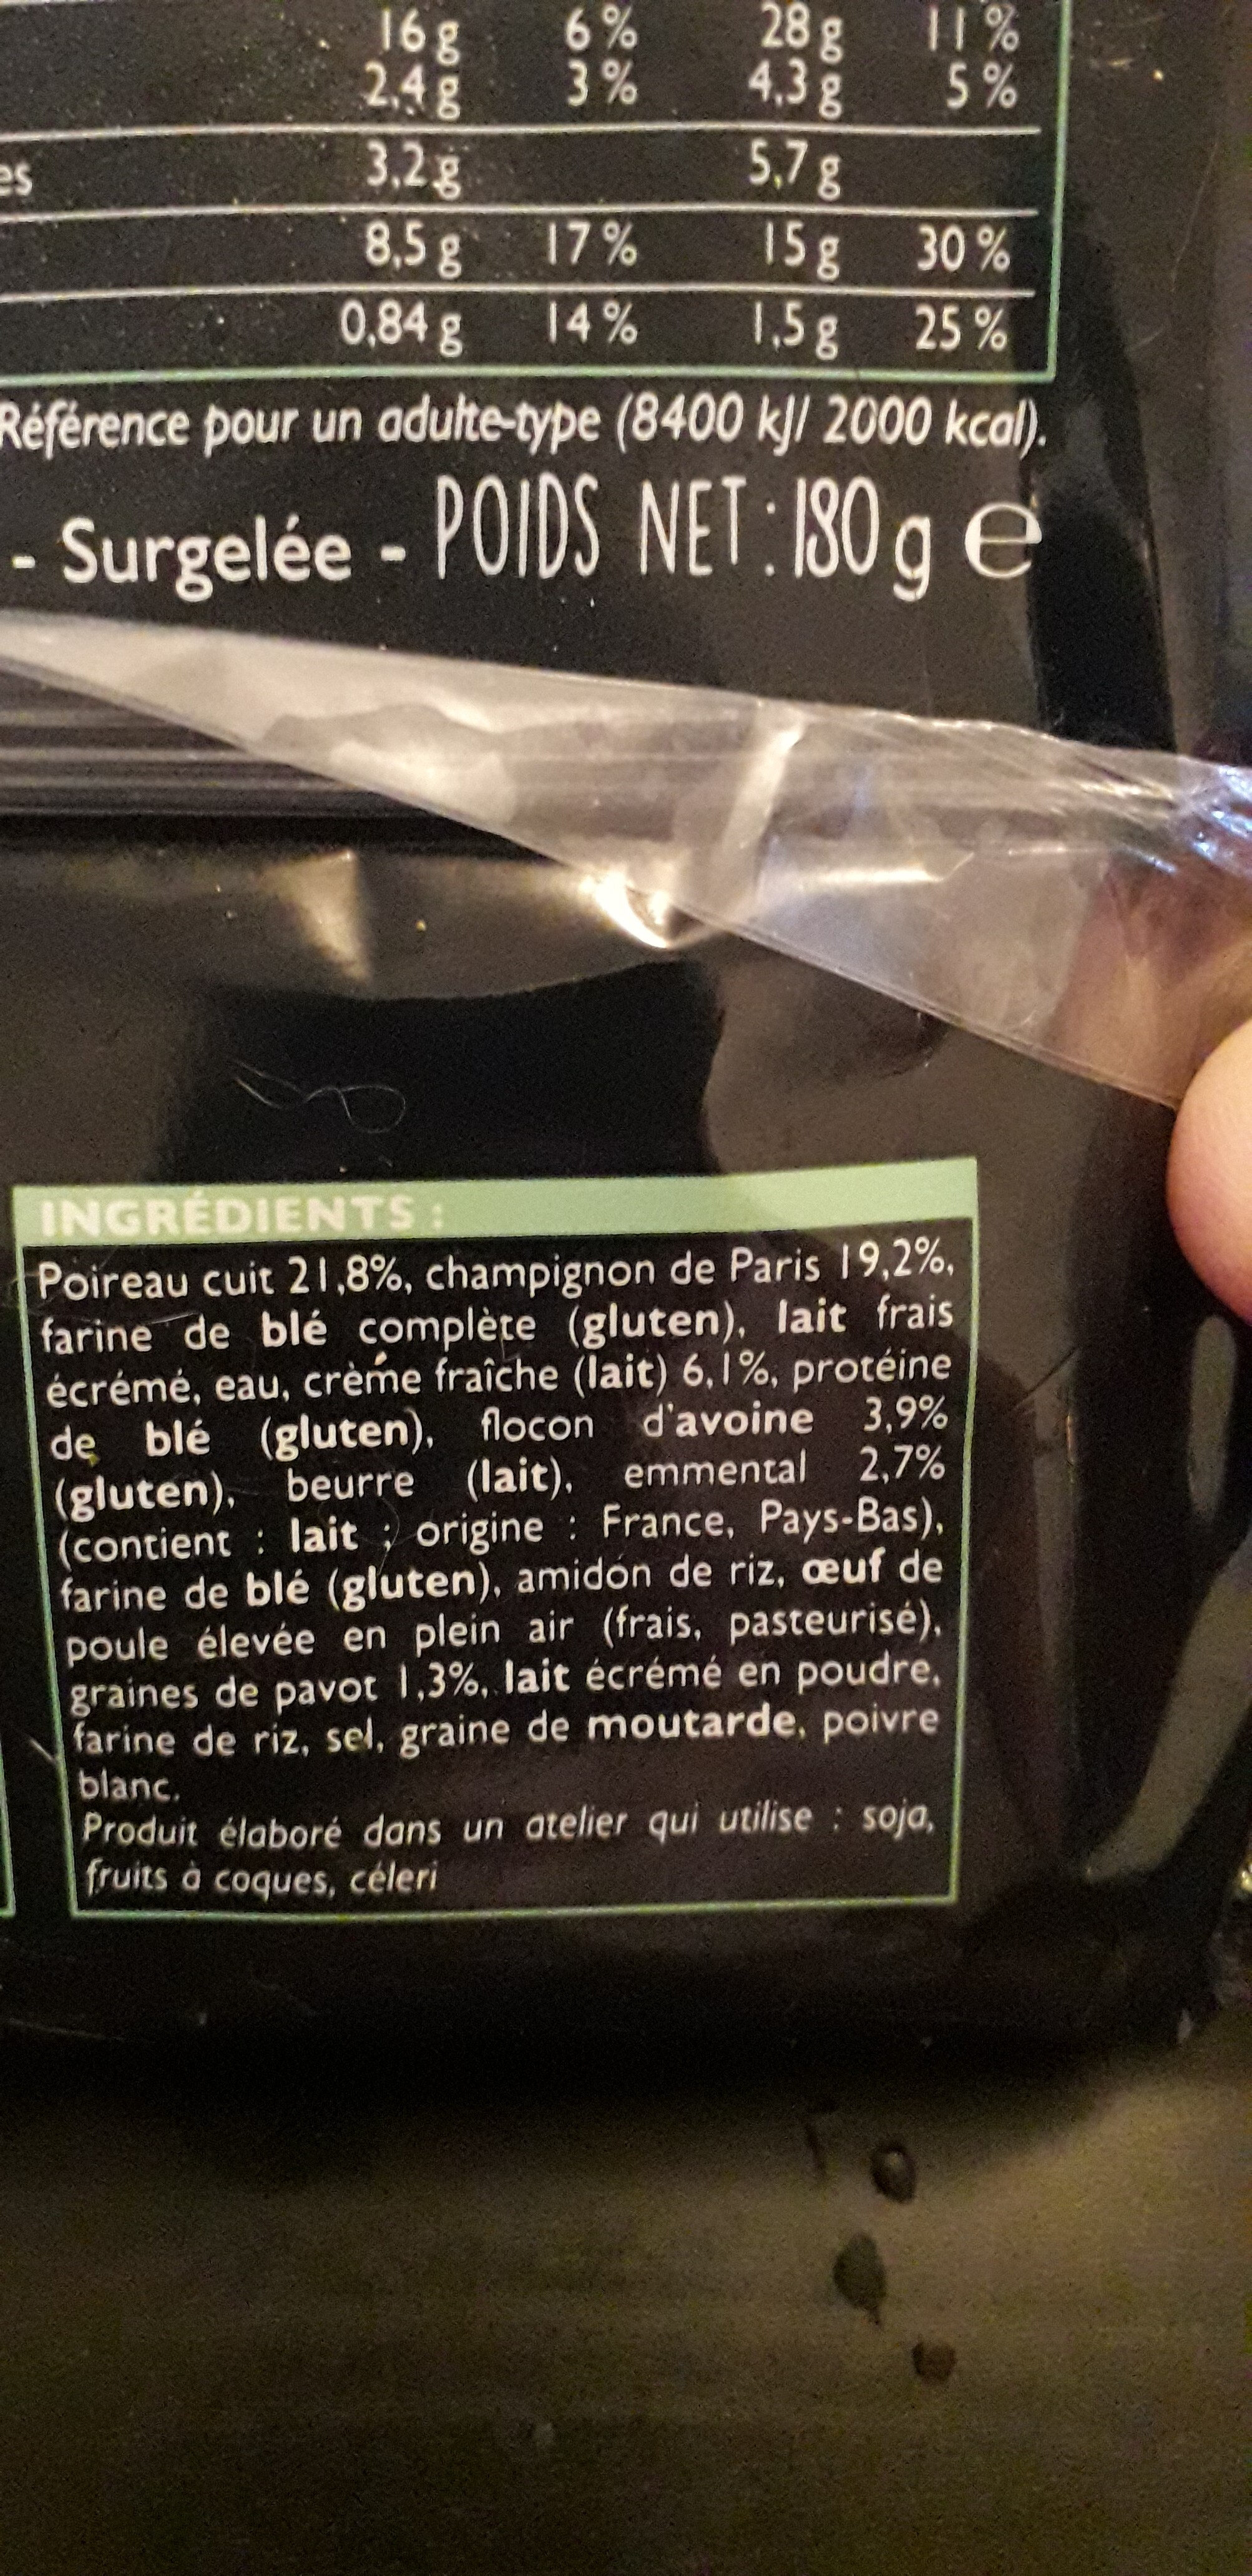 tartelette poireaux champignon de paris - Ingredients - fr